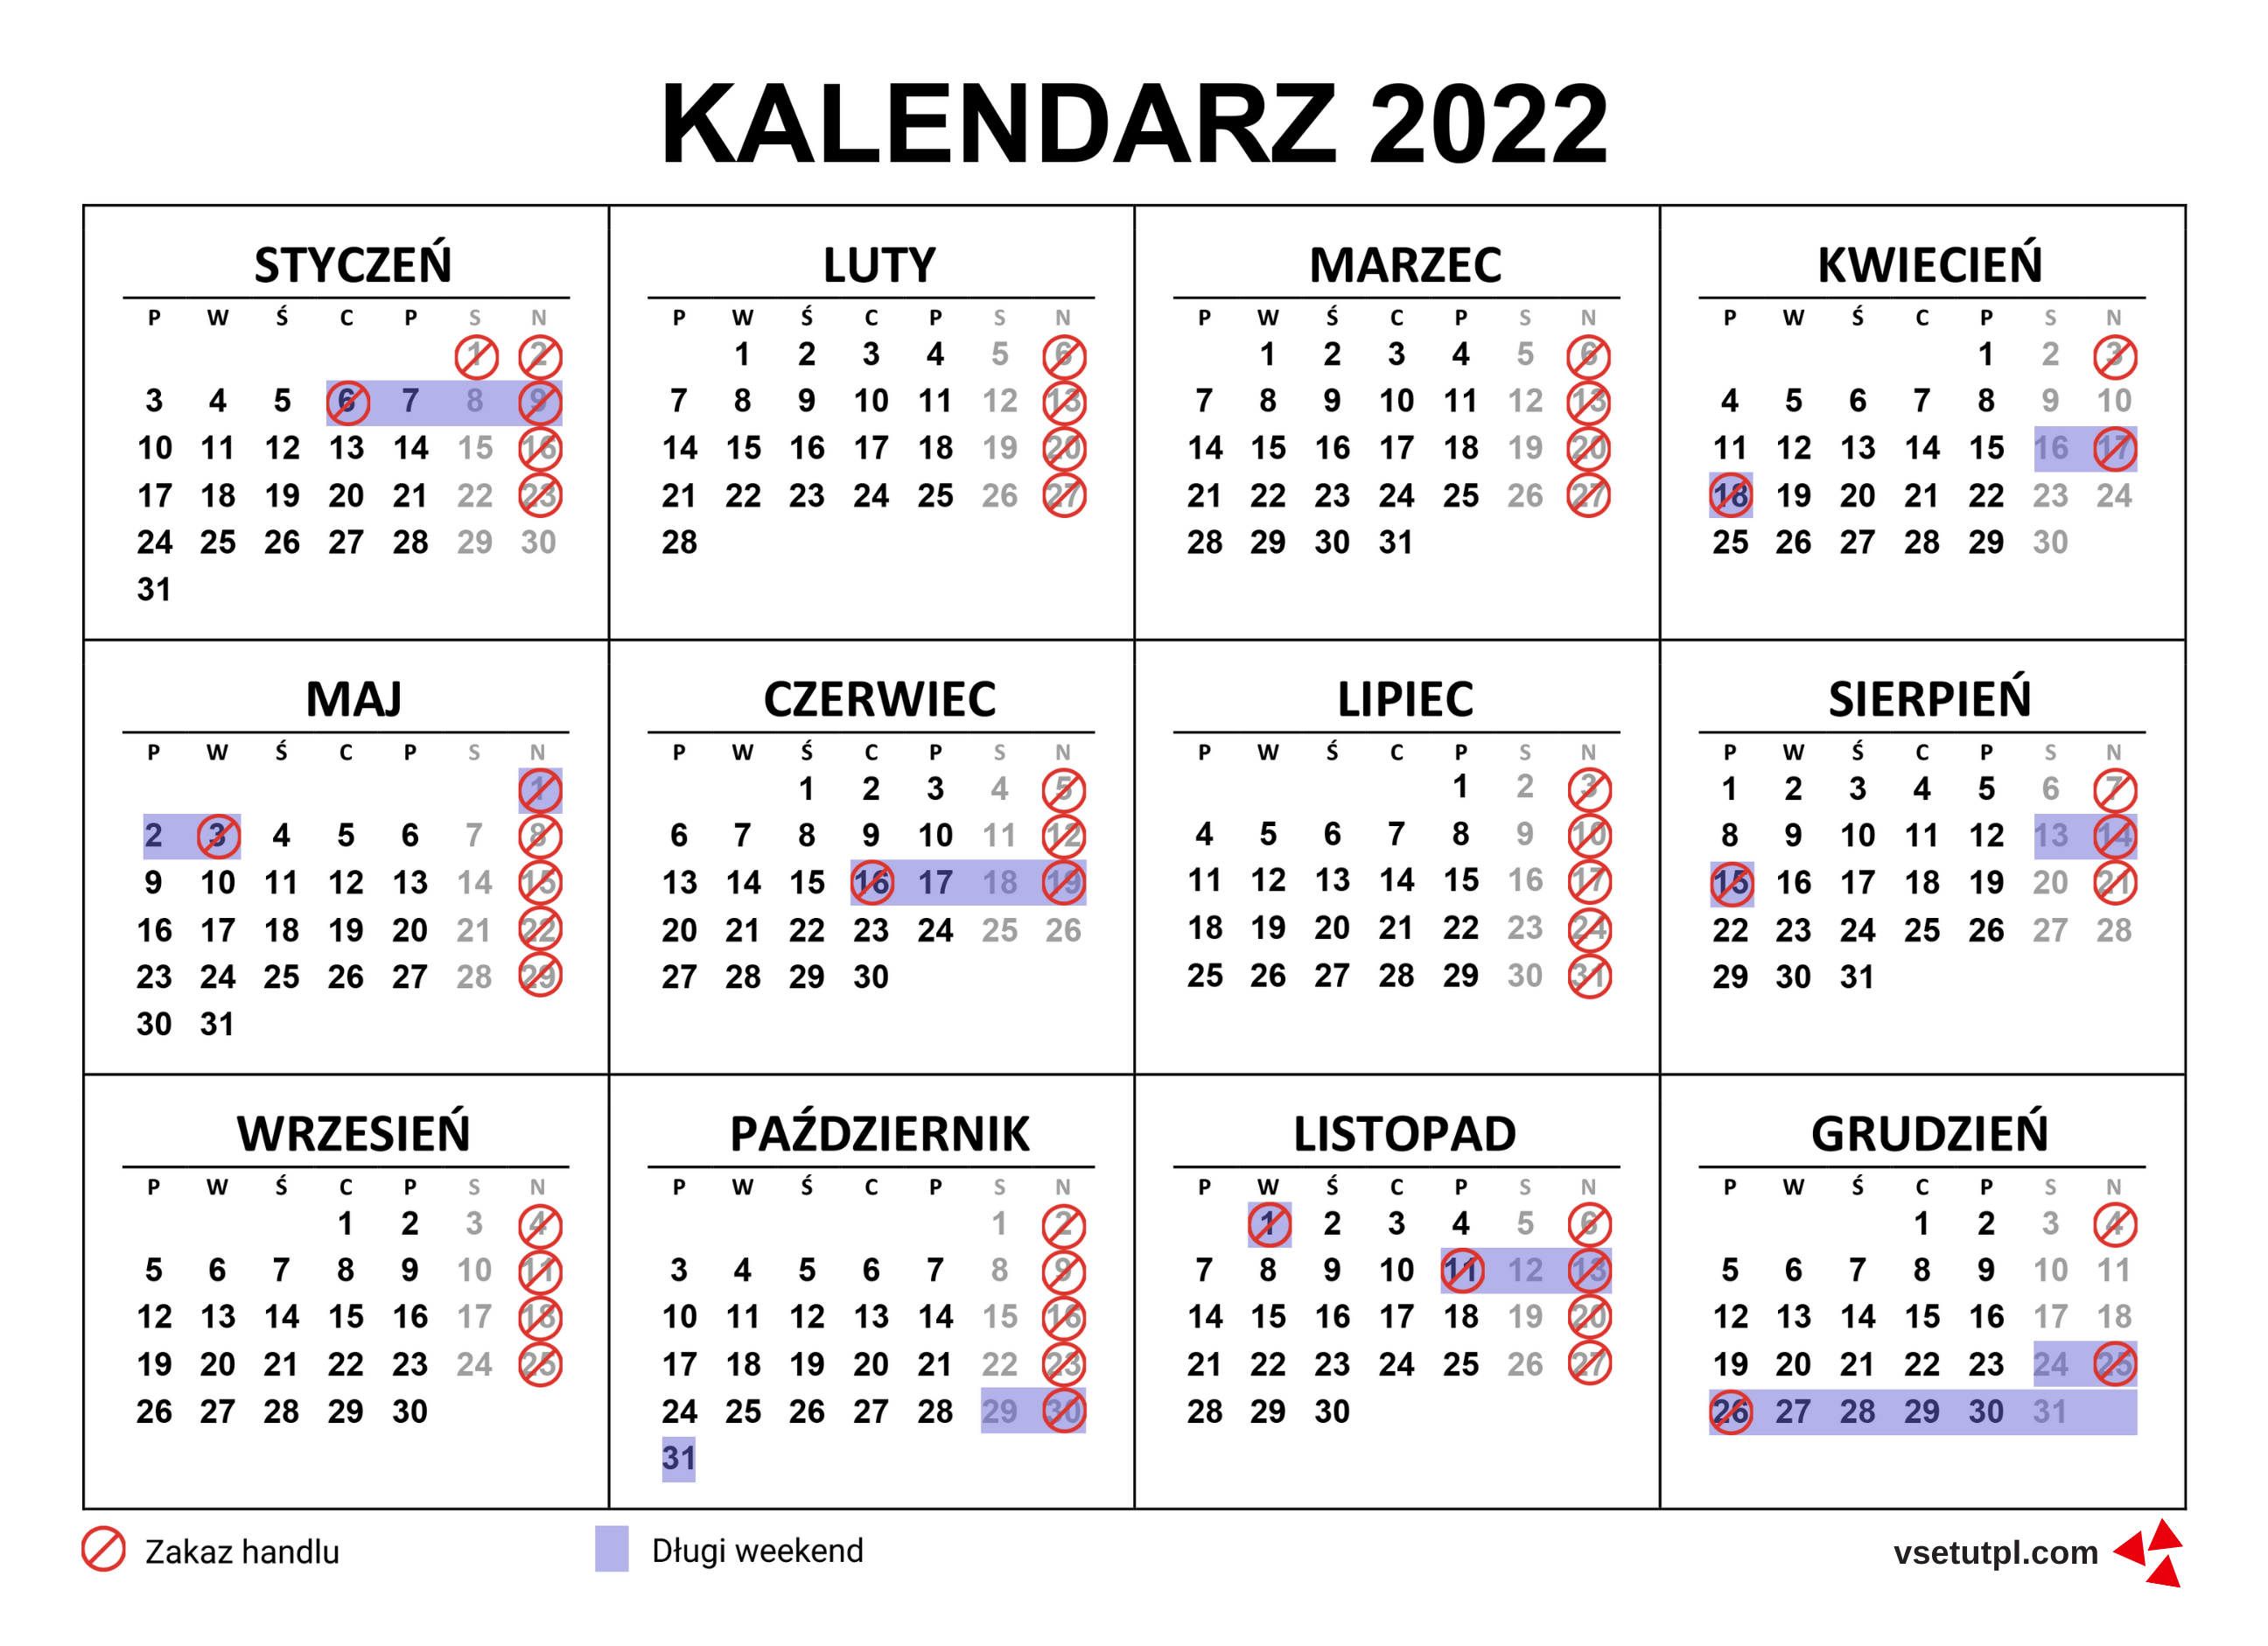 длинные выходные и неторговые воскресенья в польше 2022 календарь